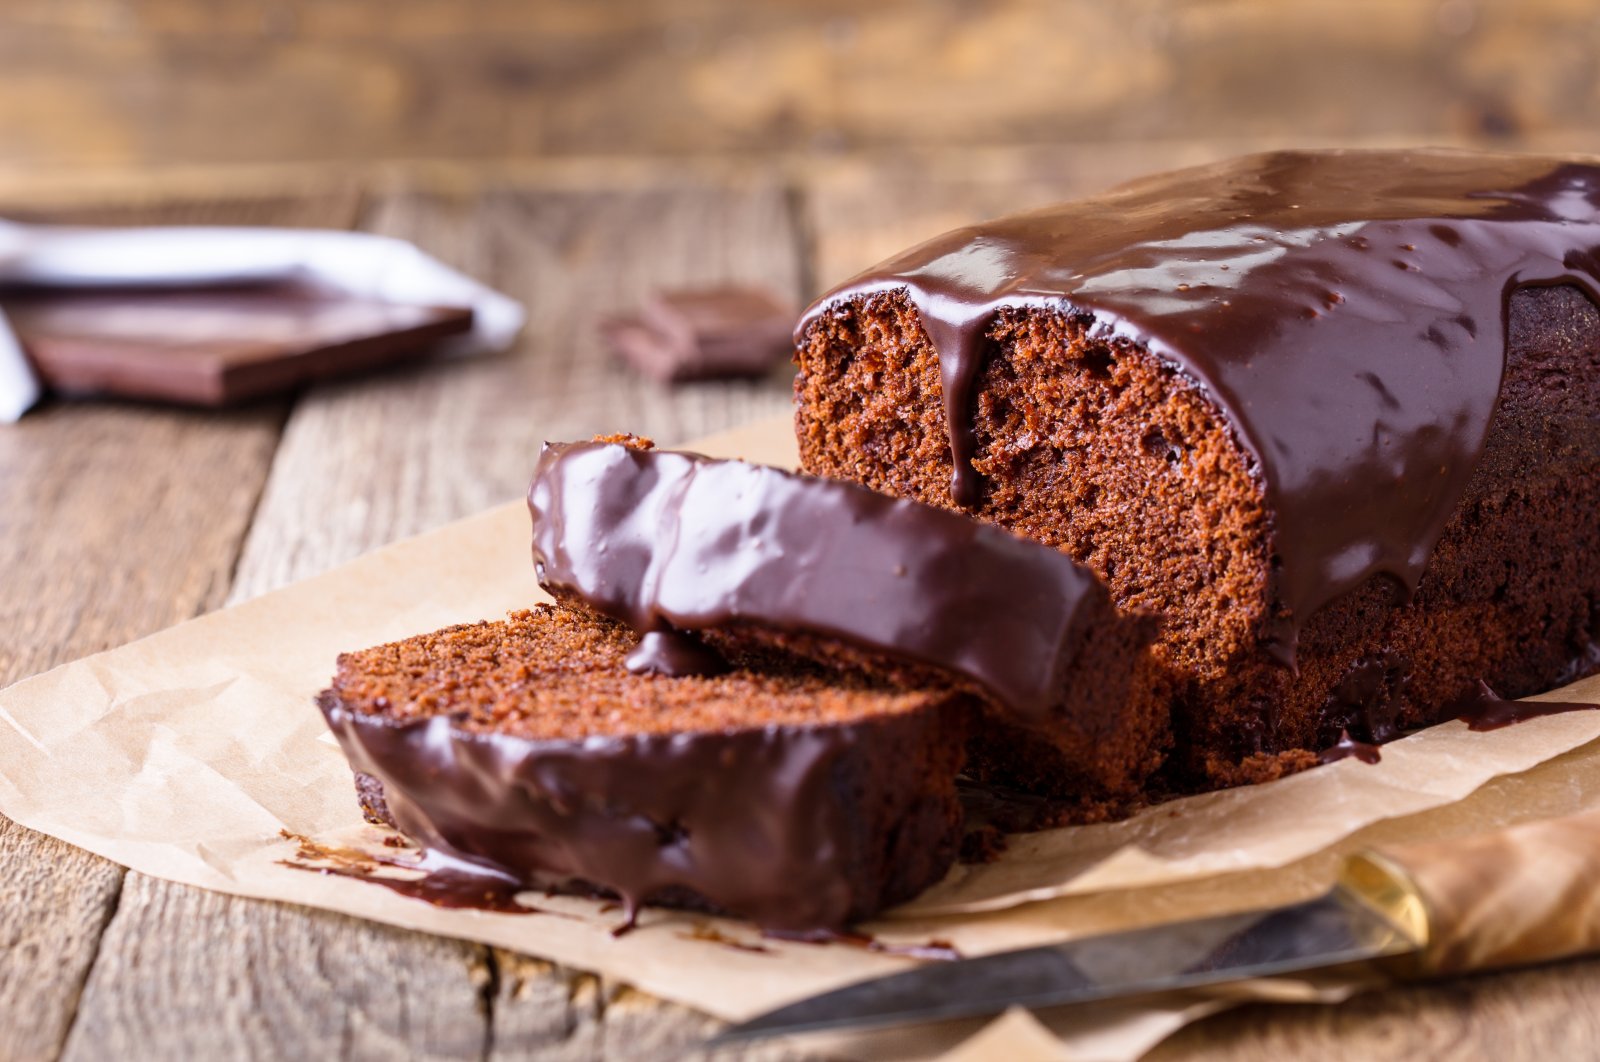 Homemade chocolate cake on baking paper. (Shutterstock Photo)